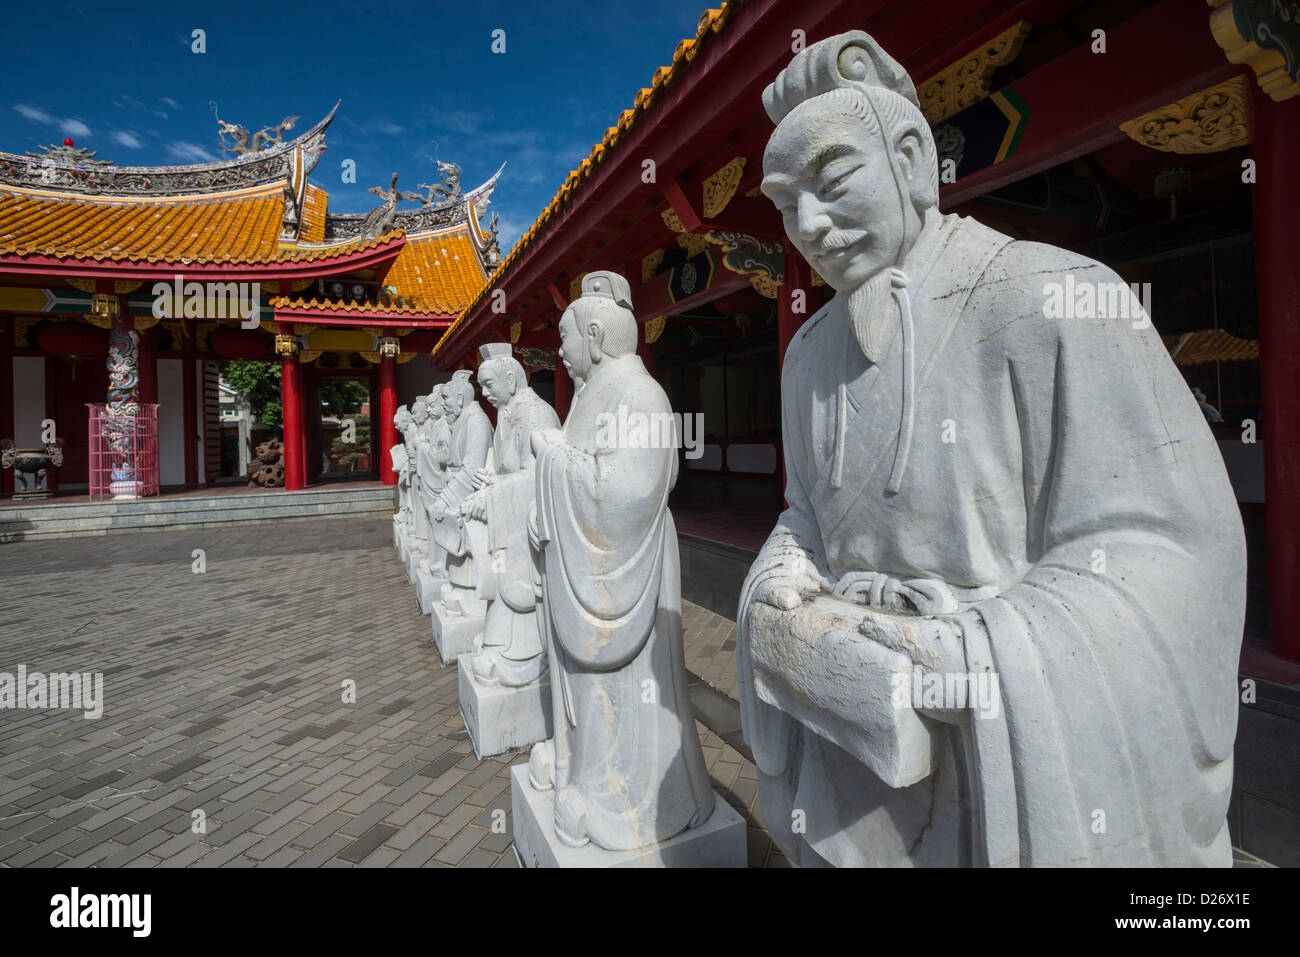 Des statues de philosophes chinois Confucius dans le culte, Nagasaki au Japon Banque D'Images